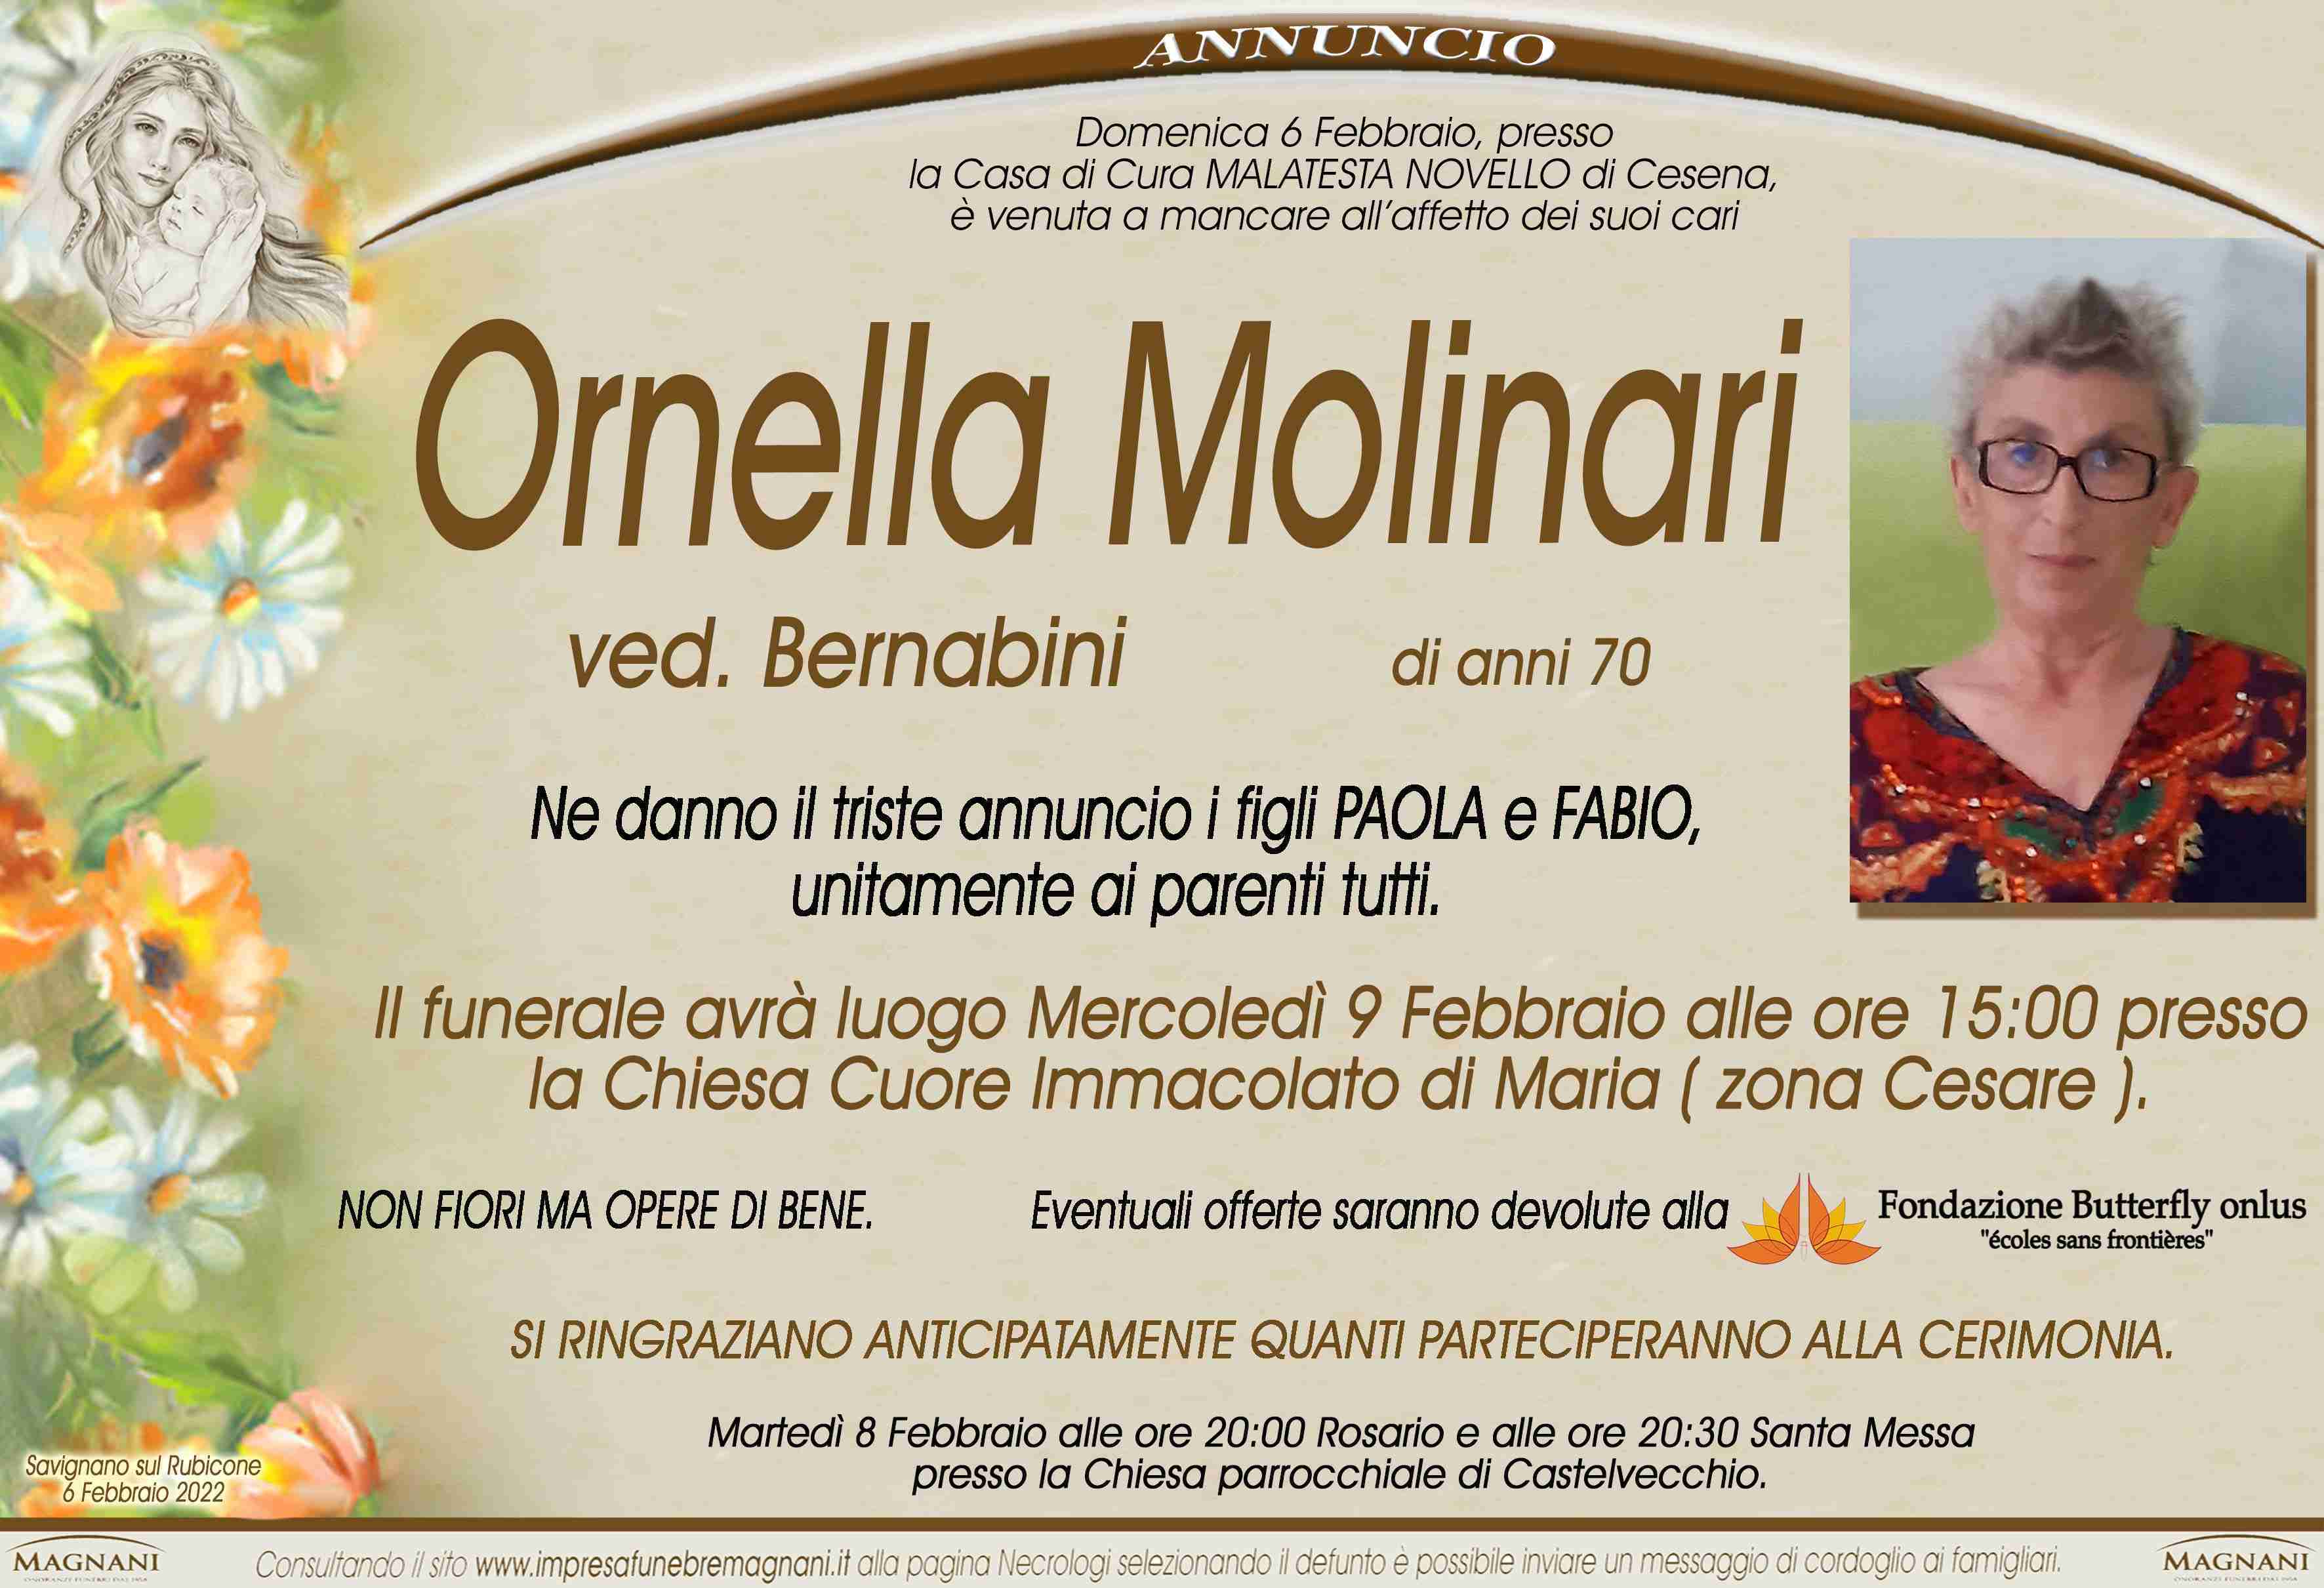 Ornella Molinari